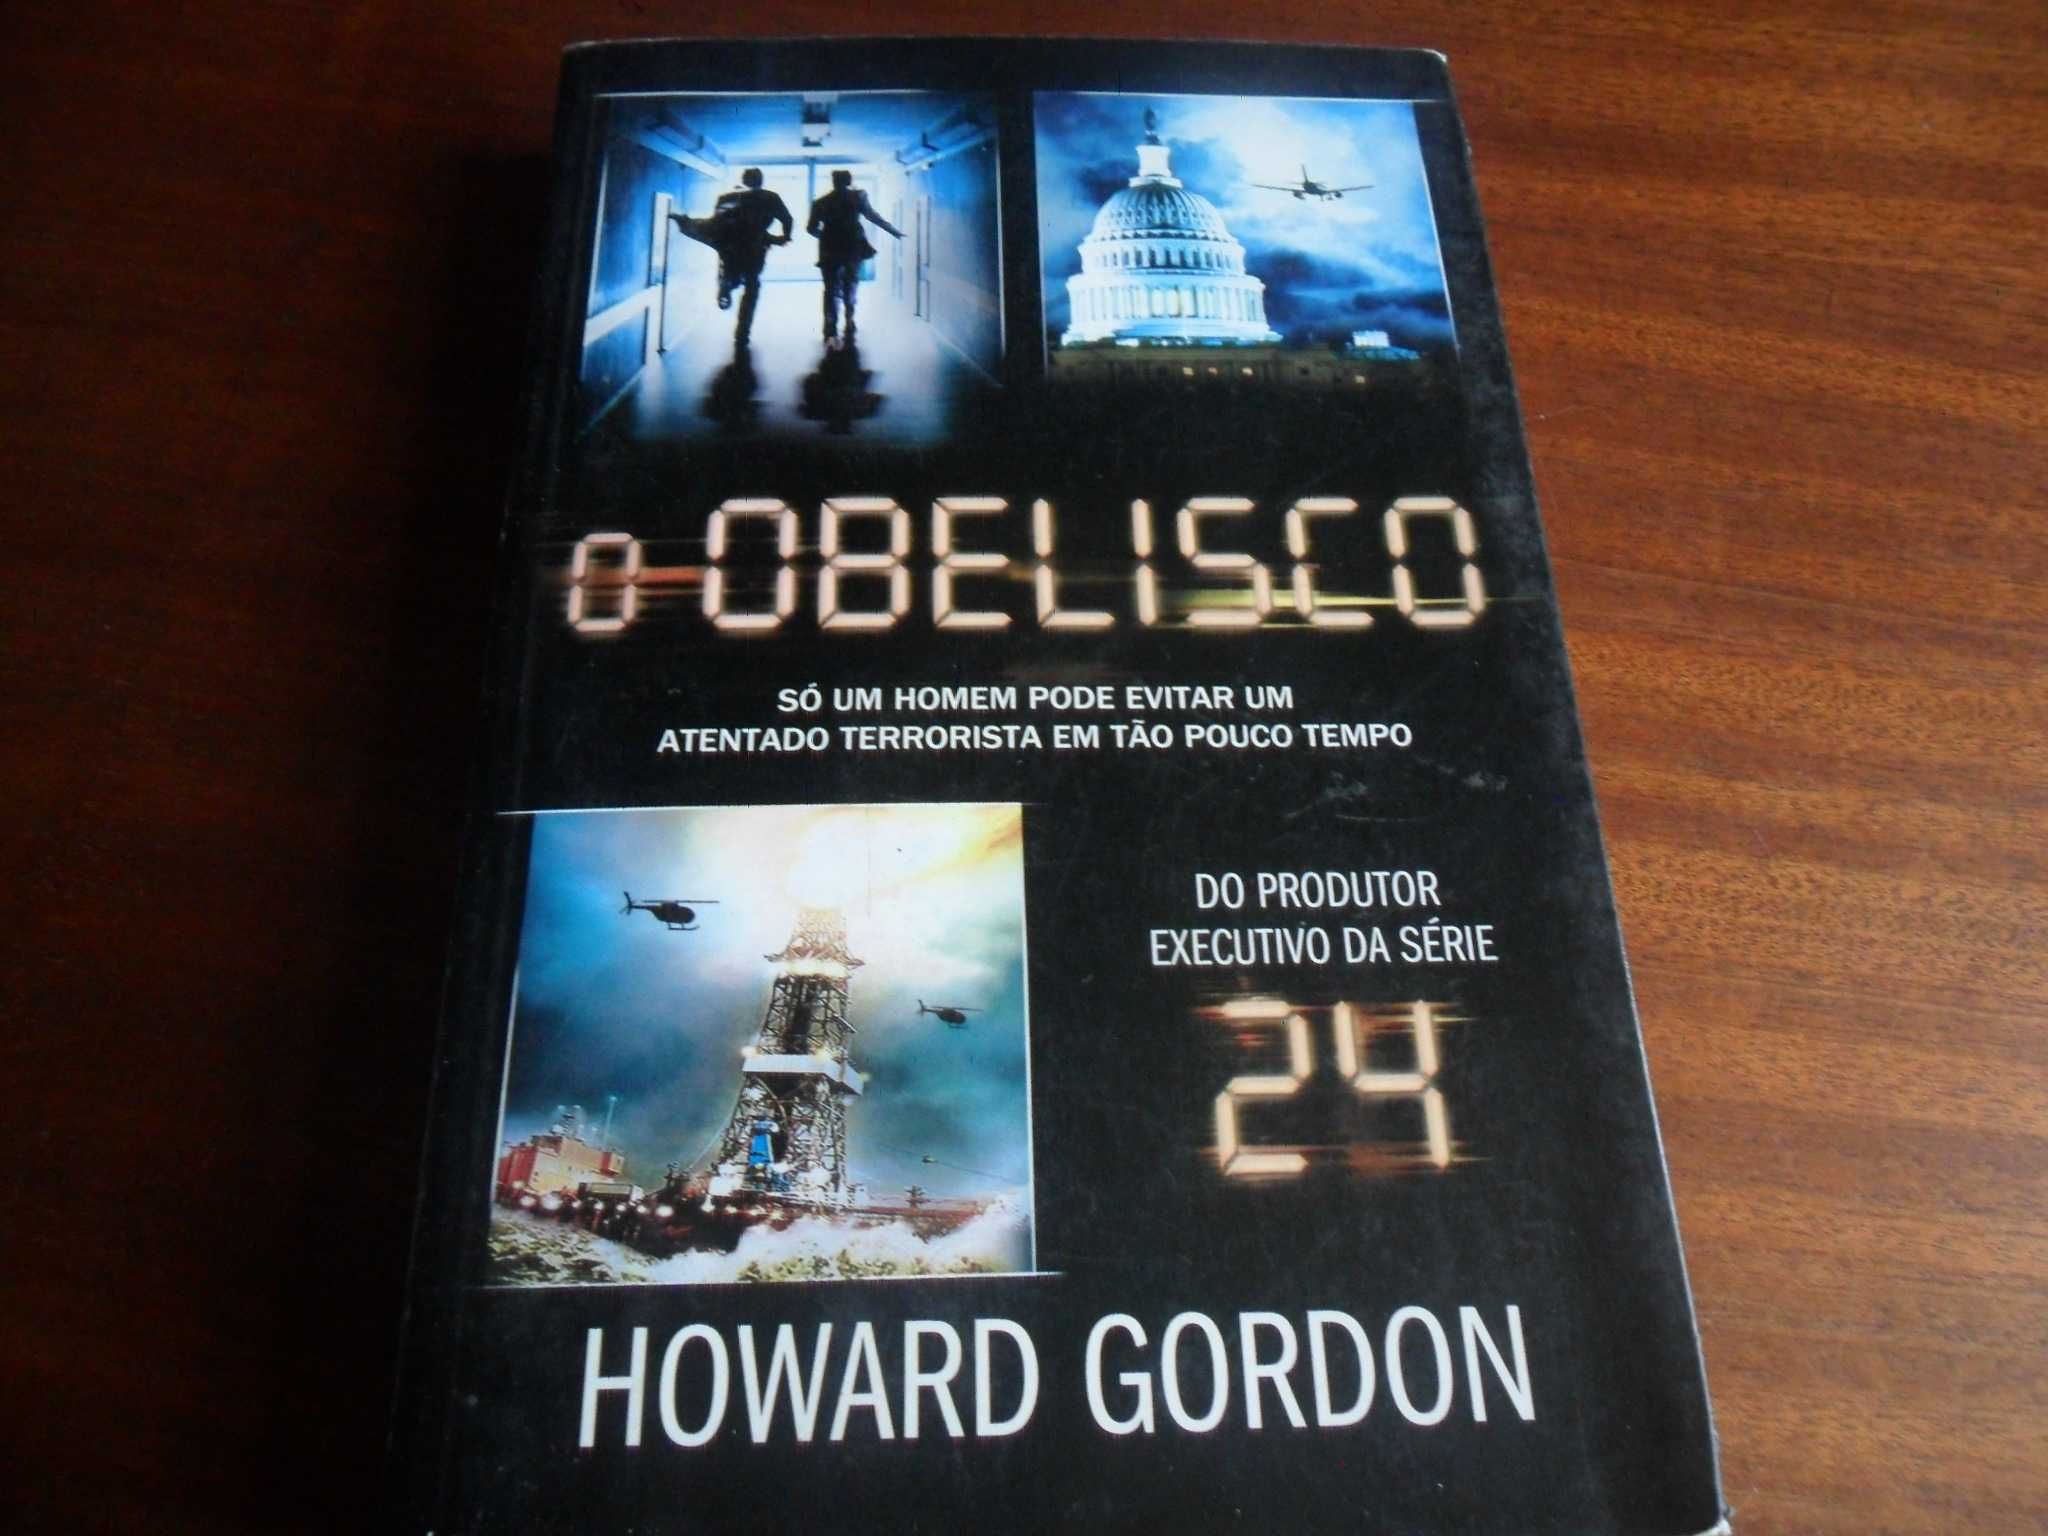 "O Obelisco" de Howard Gordon - 1ª Edição de 2011